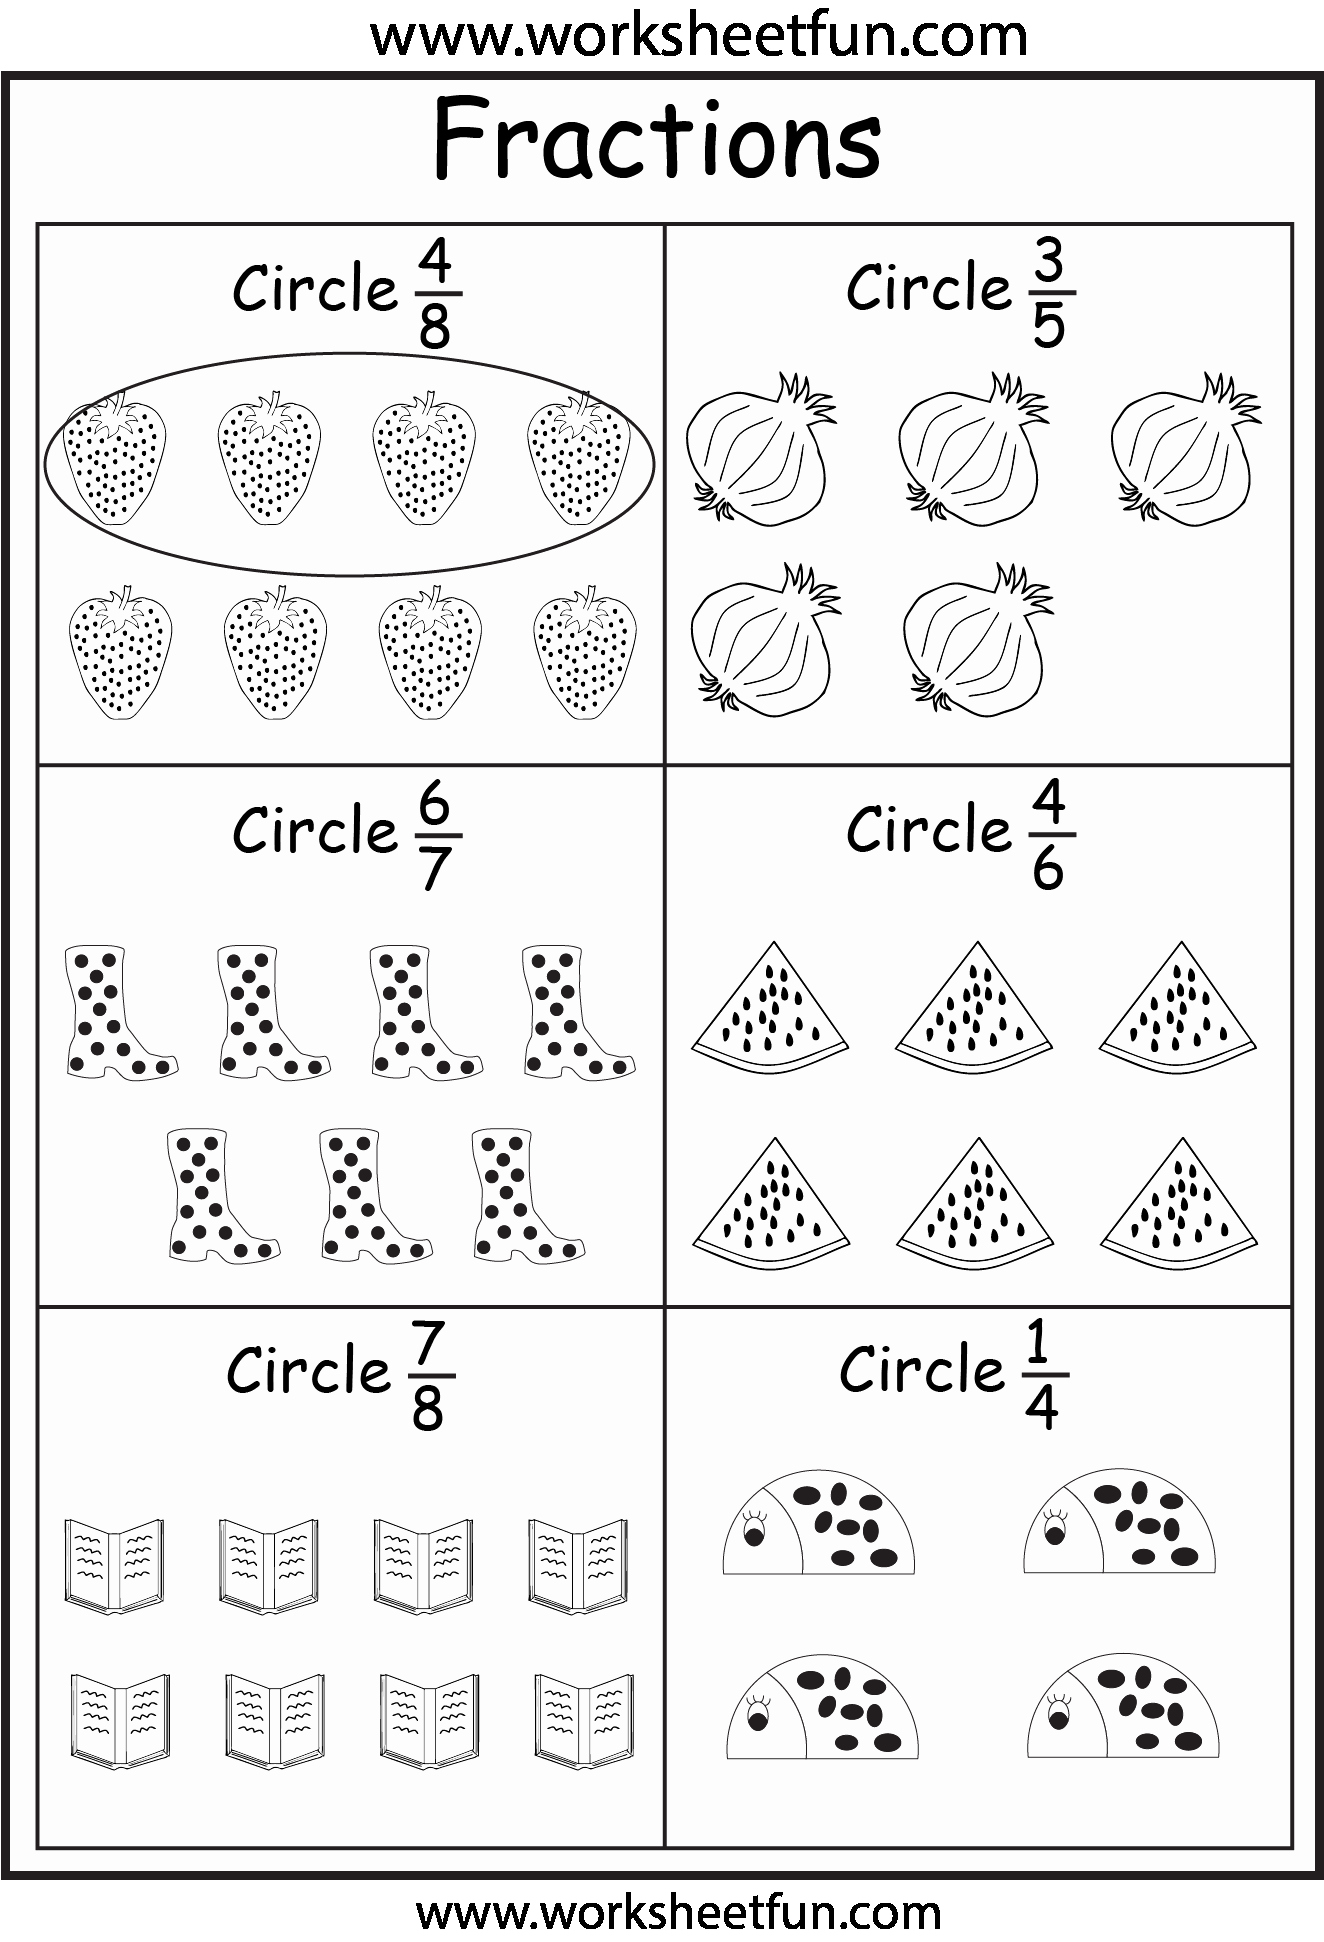 Fractions Worksheets First Grade Elegant Fraction – 5 Worksheets Free Printable Worksheets